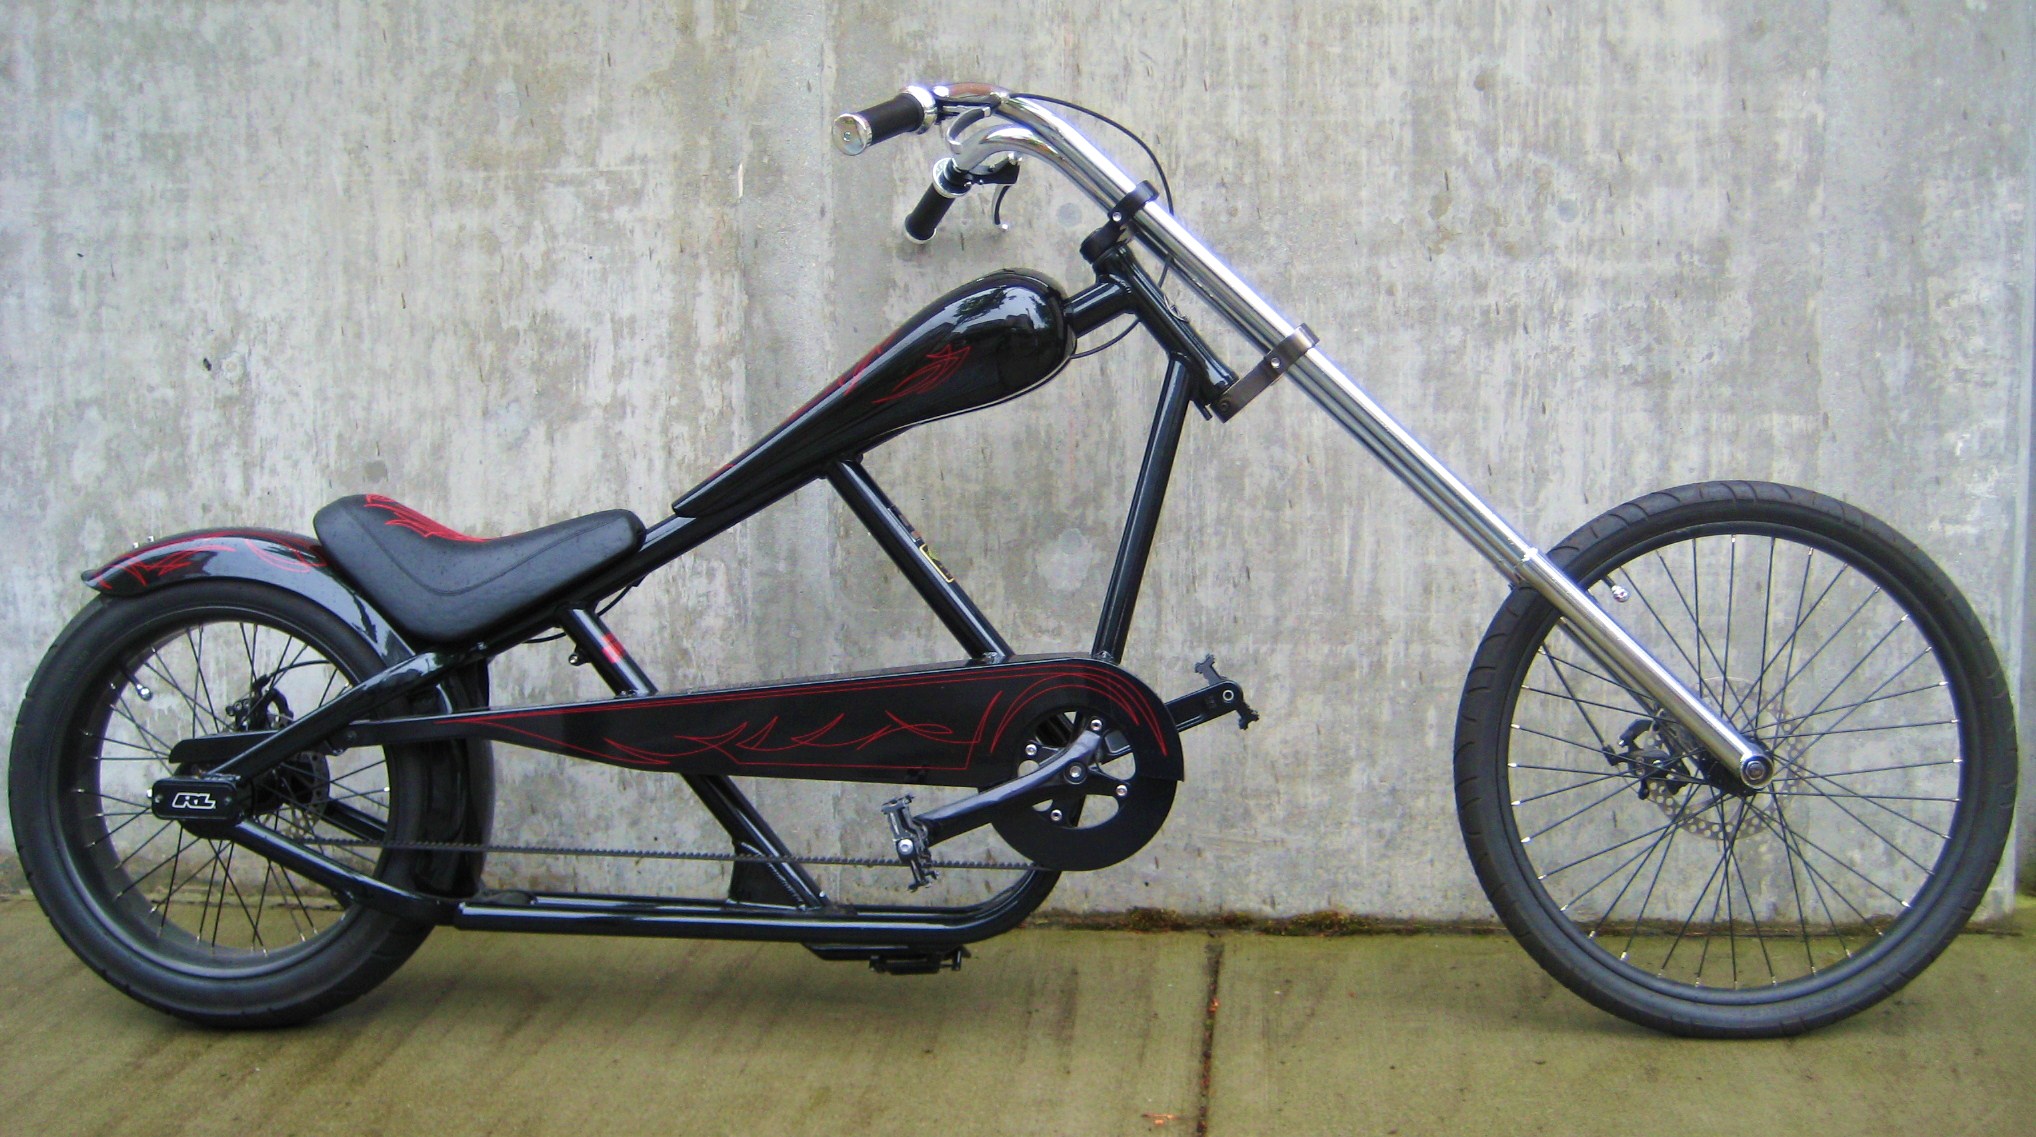 pedal chopper bike